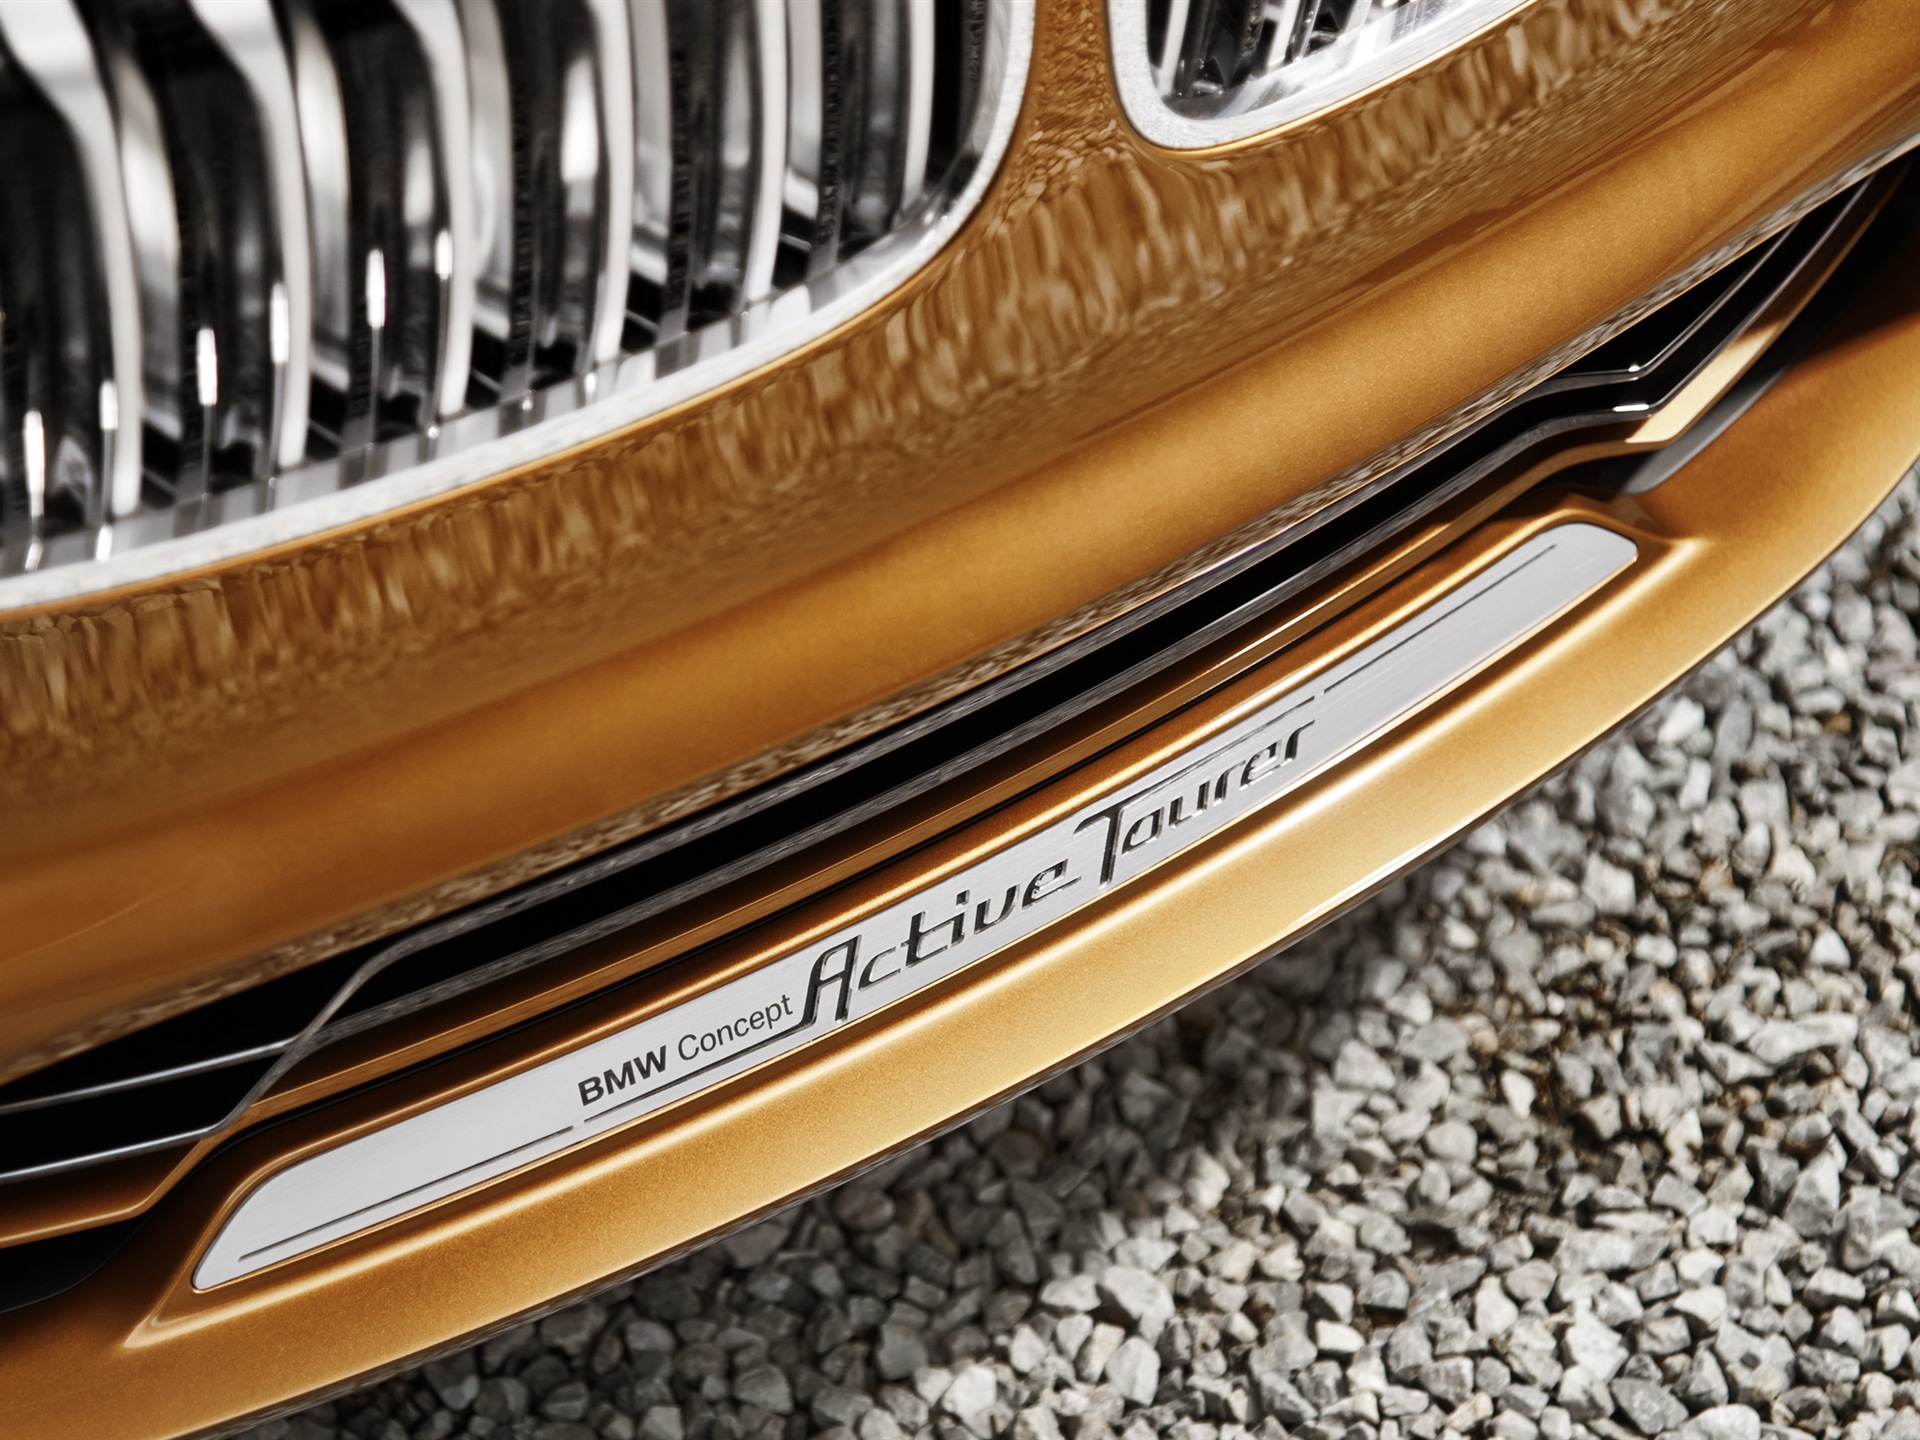 2013 BMW Concept Active Tourer 宝马旅行车 高清壁纸18 - 1920x1440